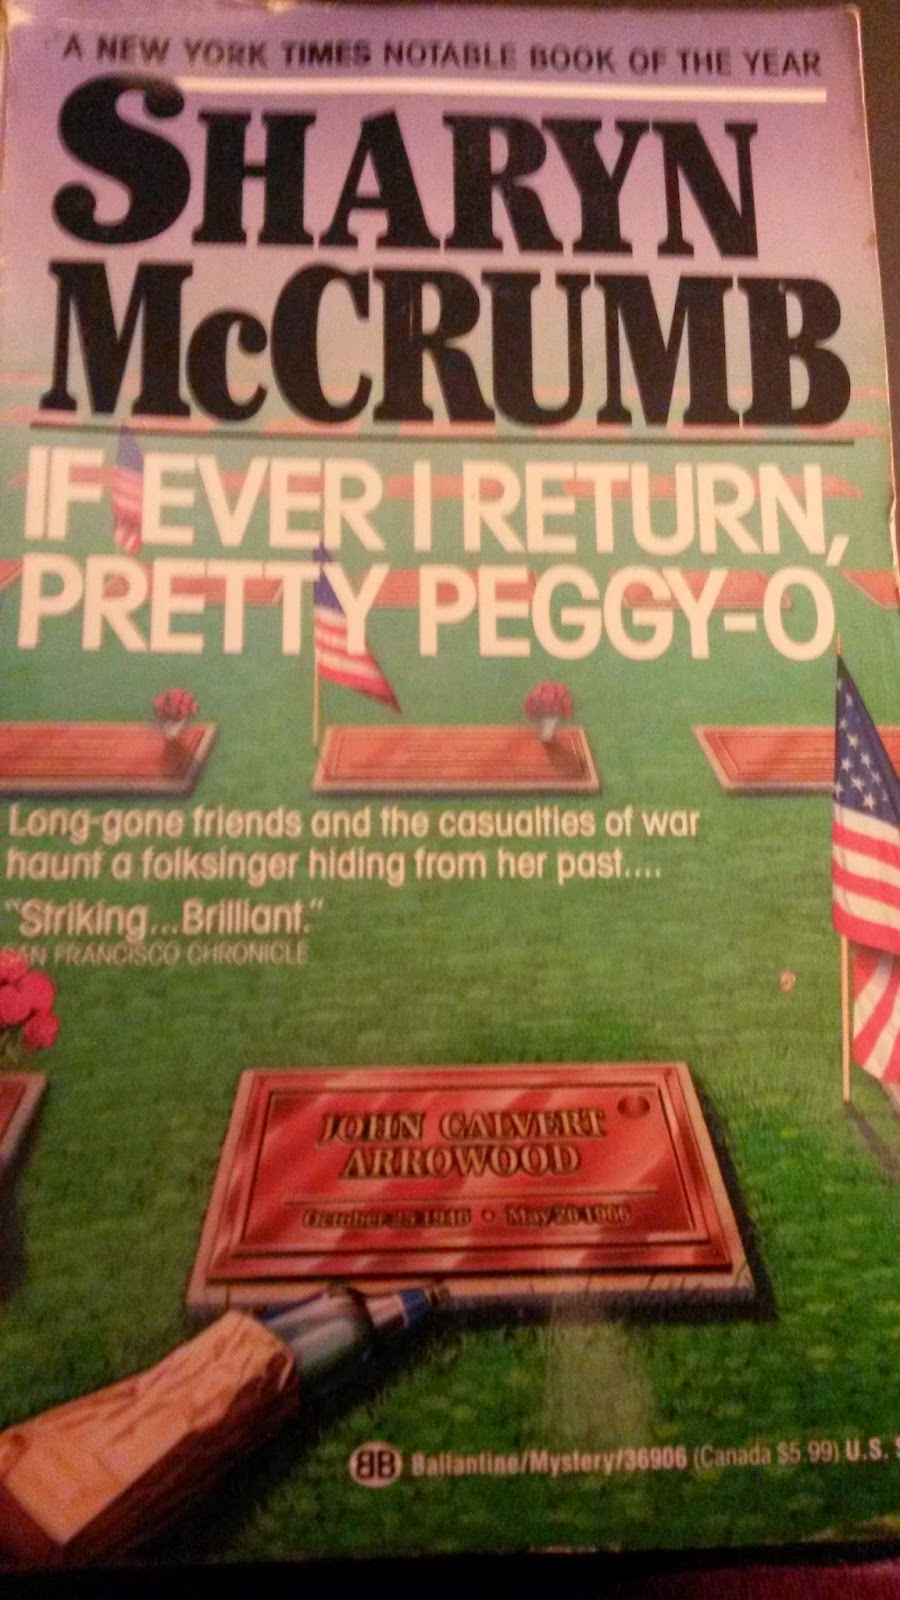 https://www.goodreads.com/book/show/905565.If_Ever_I_Return_Pretty_Peggy_O